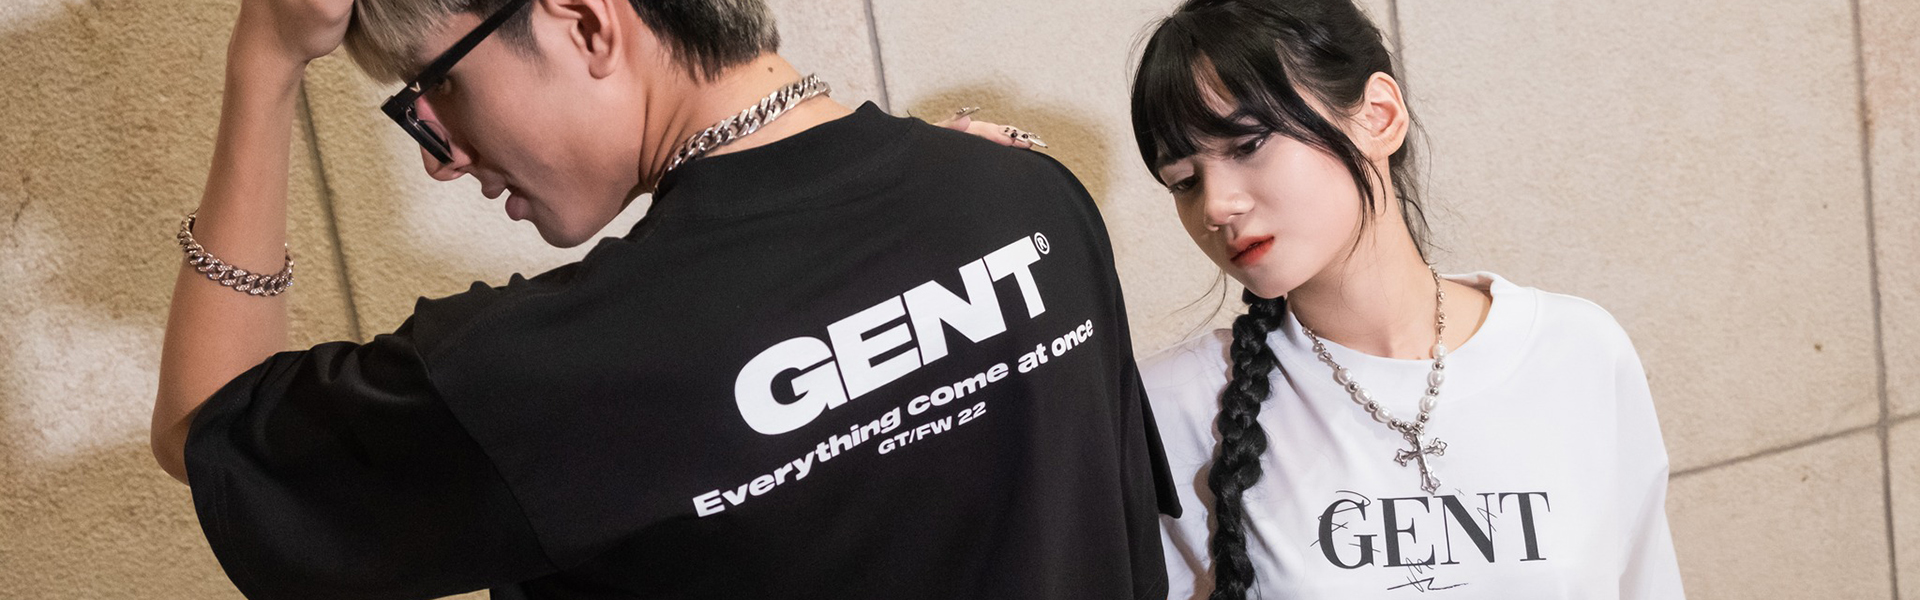 Áo thun thời trang cho thế hệ GenT